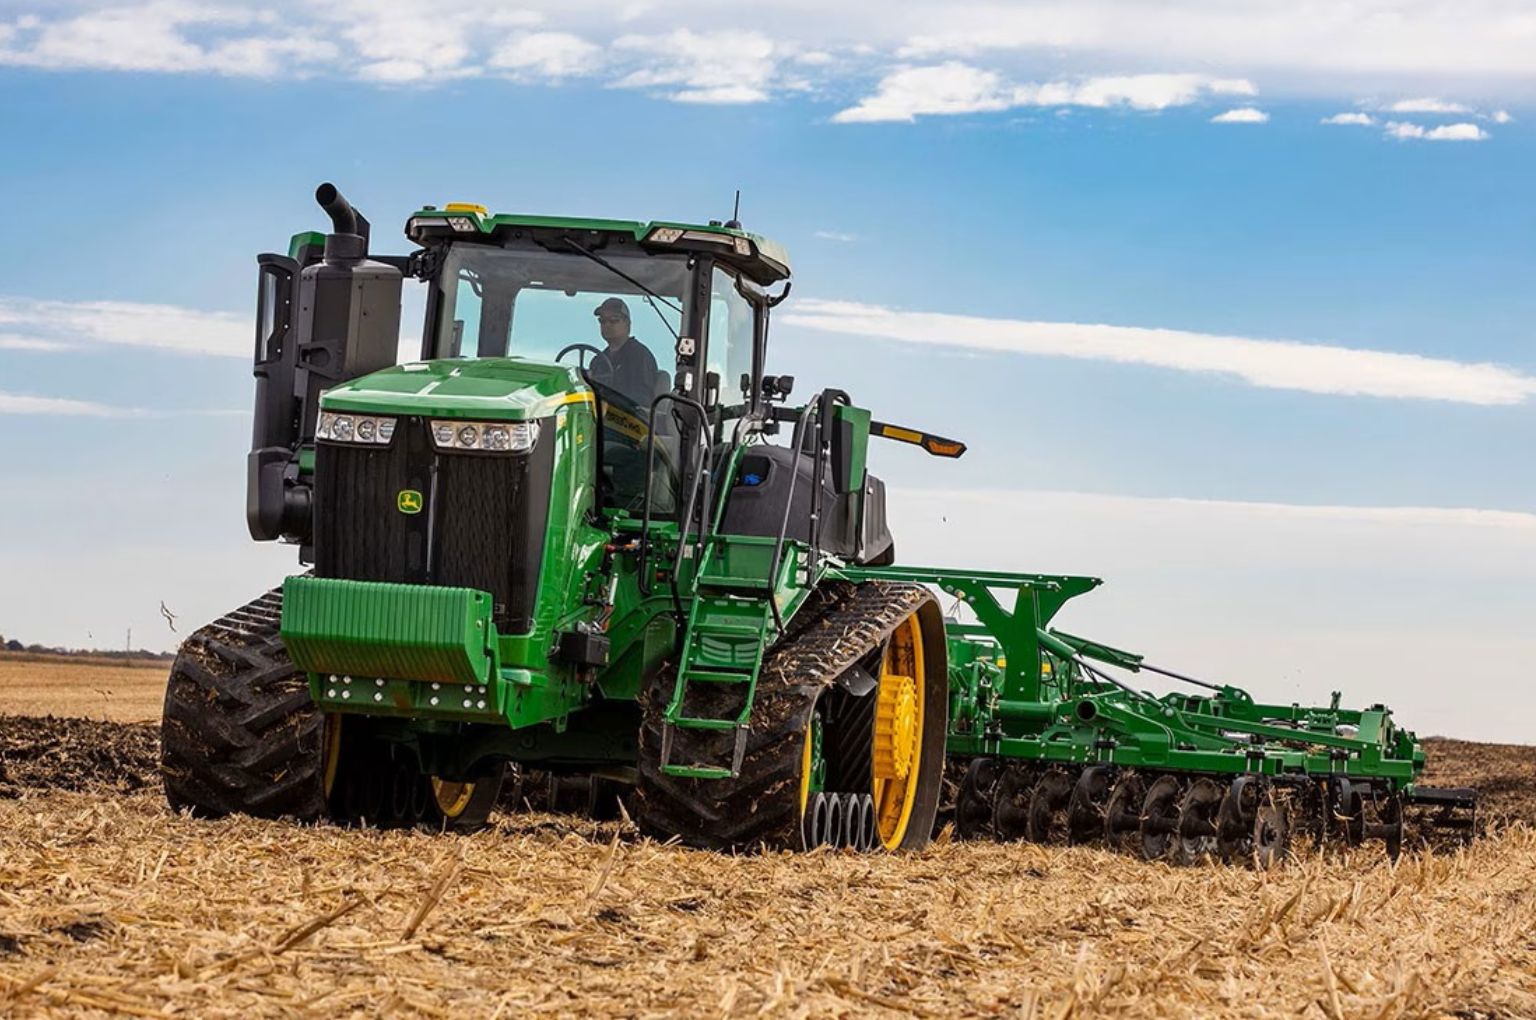 John Deere updates 7, 8 and 9 Series tractors